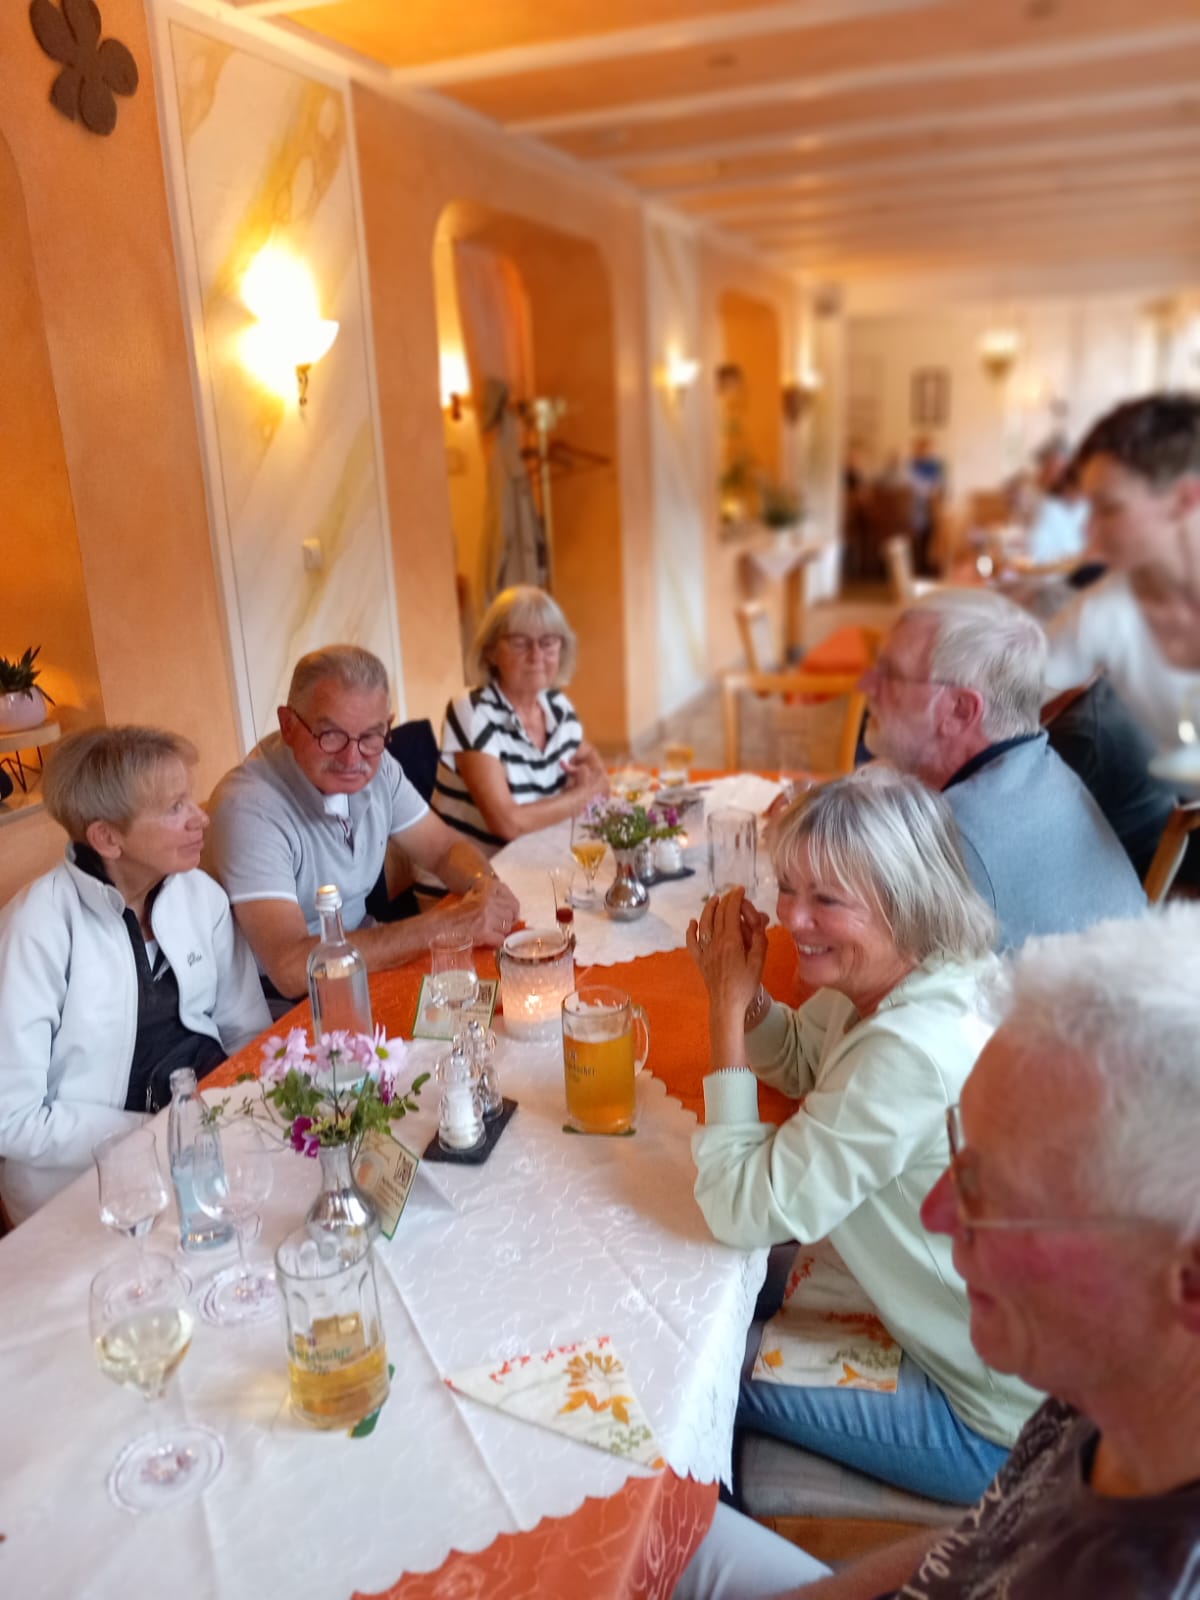 Abendessen im Hotel "Perle am Rhein" in Bad Salzig